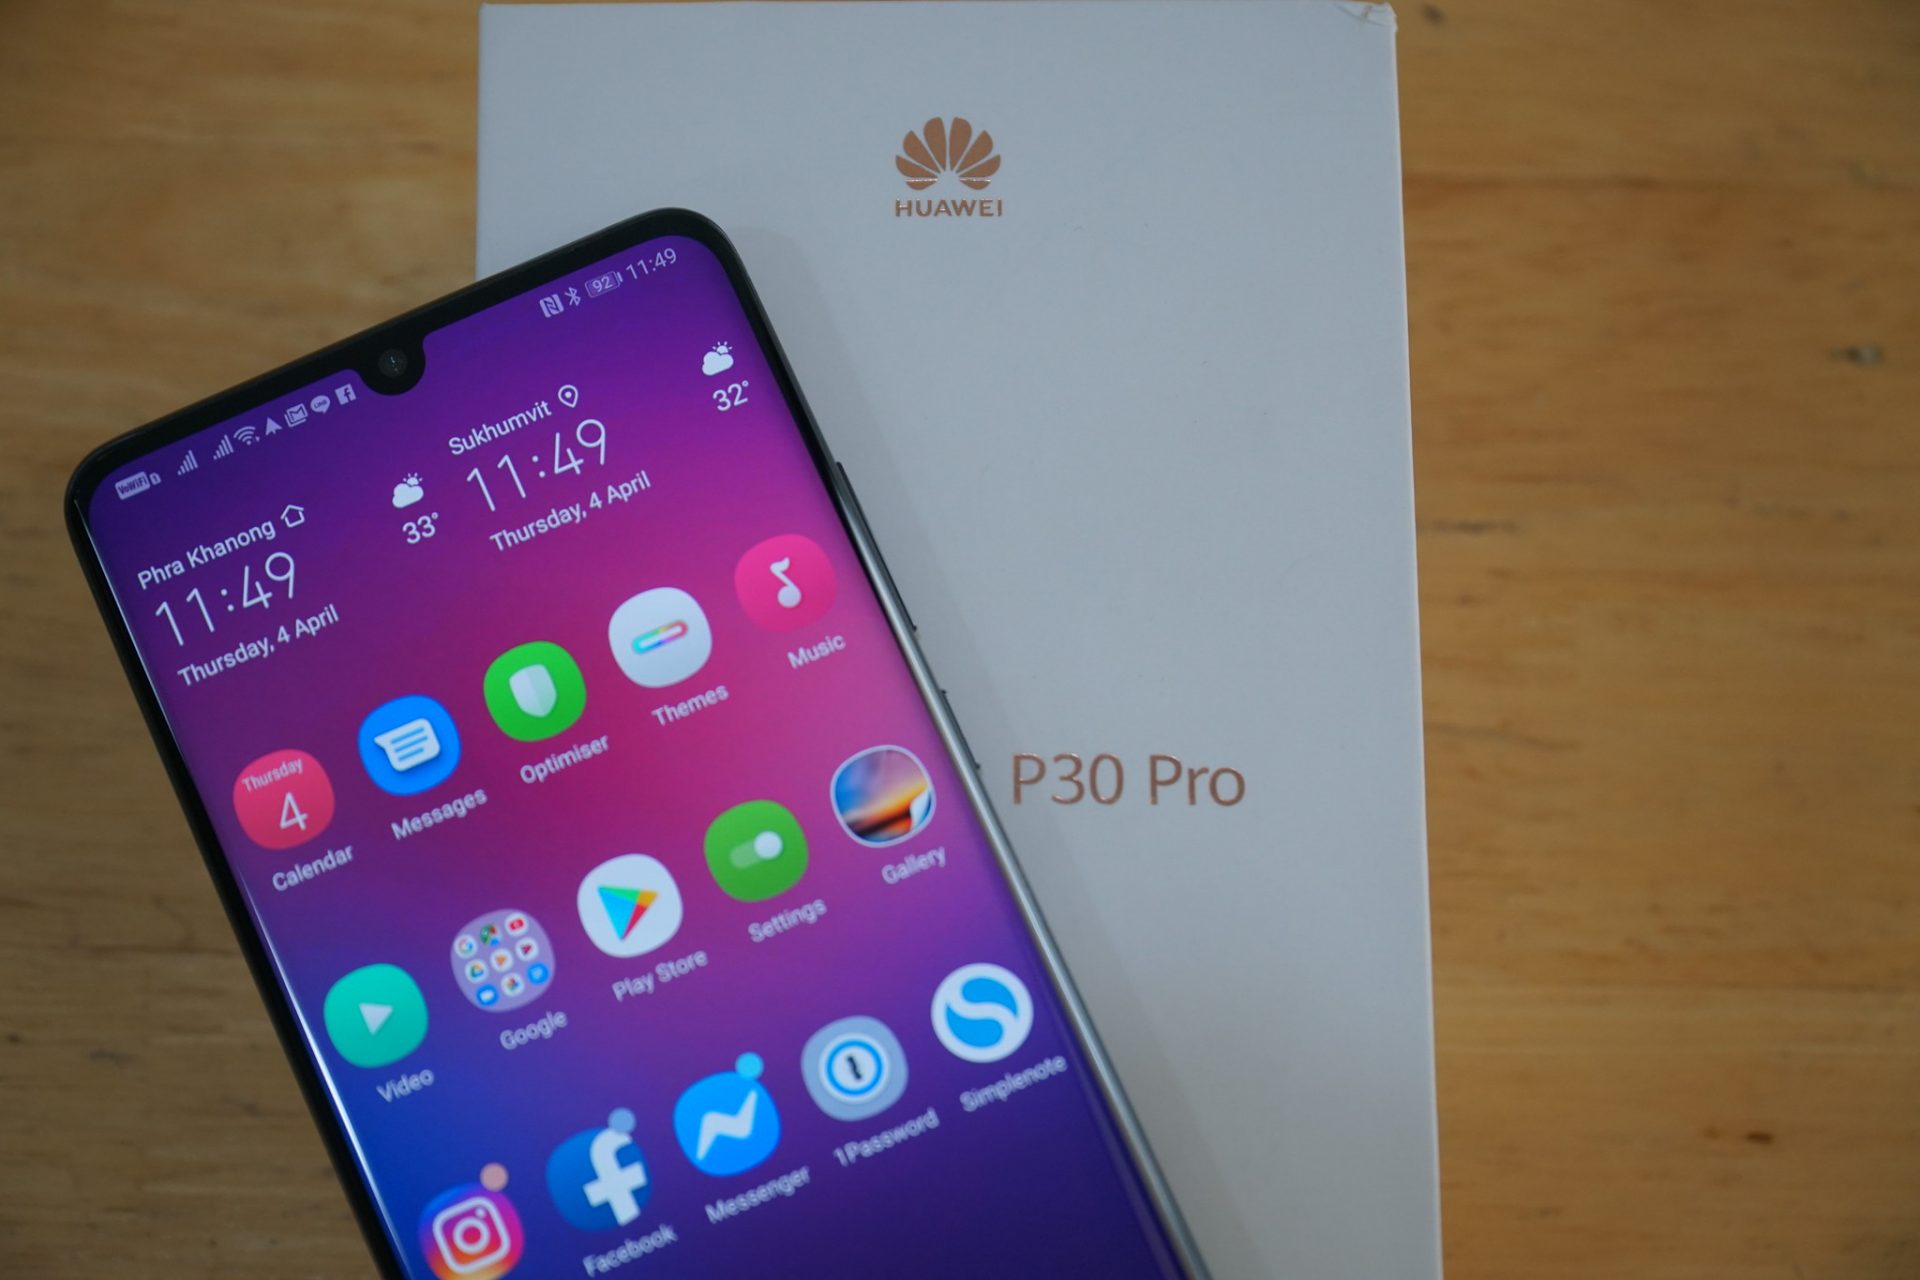 สรุป Huawei P30 Pro ไม่ได้ติดต่อเซิร์ฟเวอร์รัฐบาลจีน แต่นักวิจัยพบการเชื่อมต่อไปจีนเพราะสาเหตุอื่น